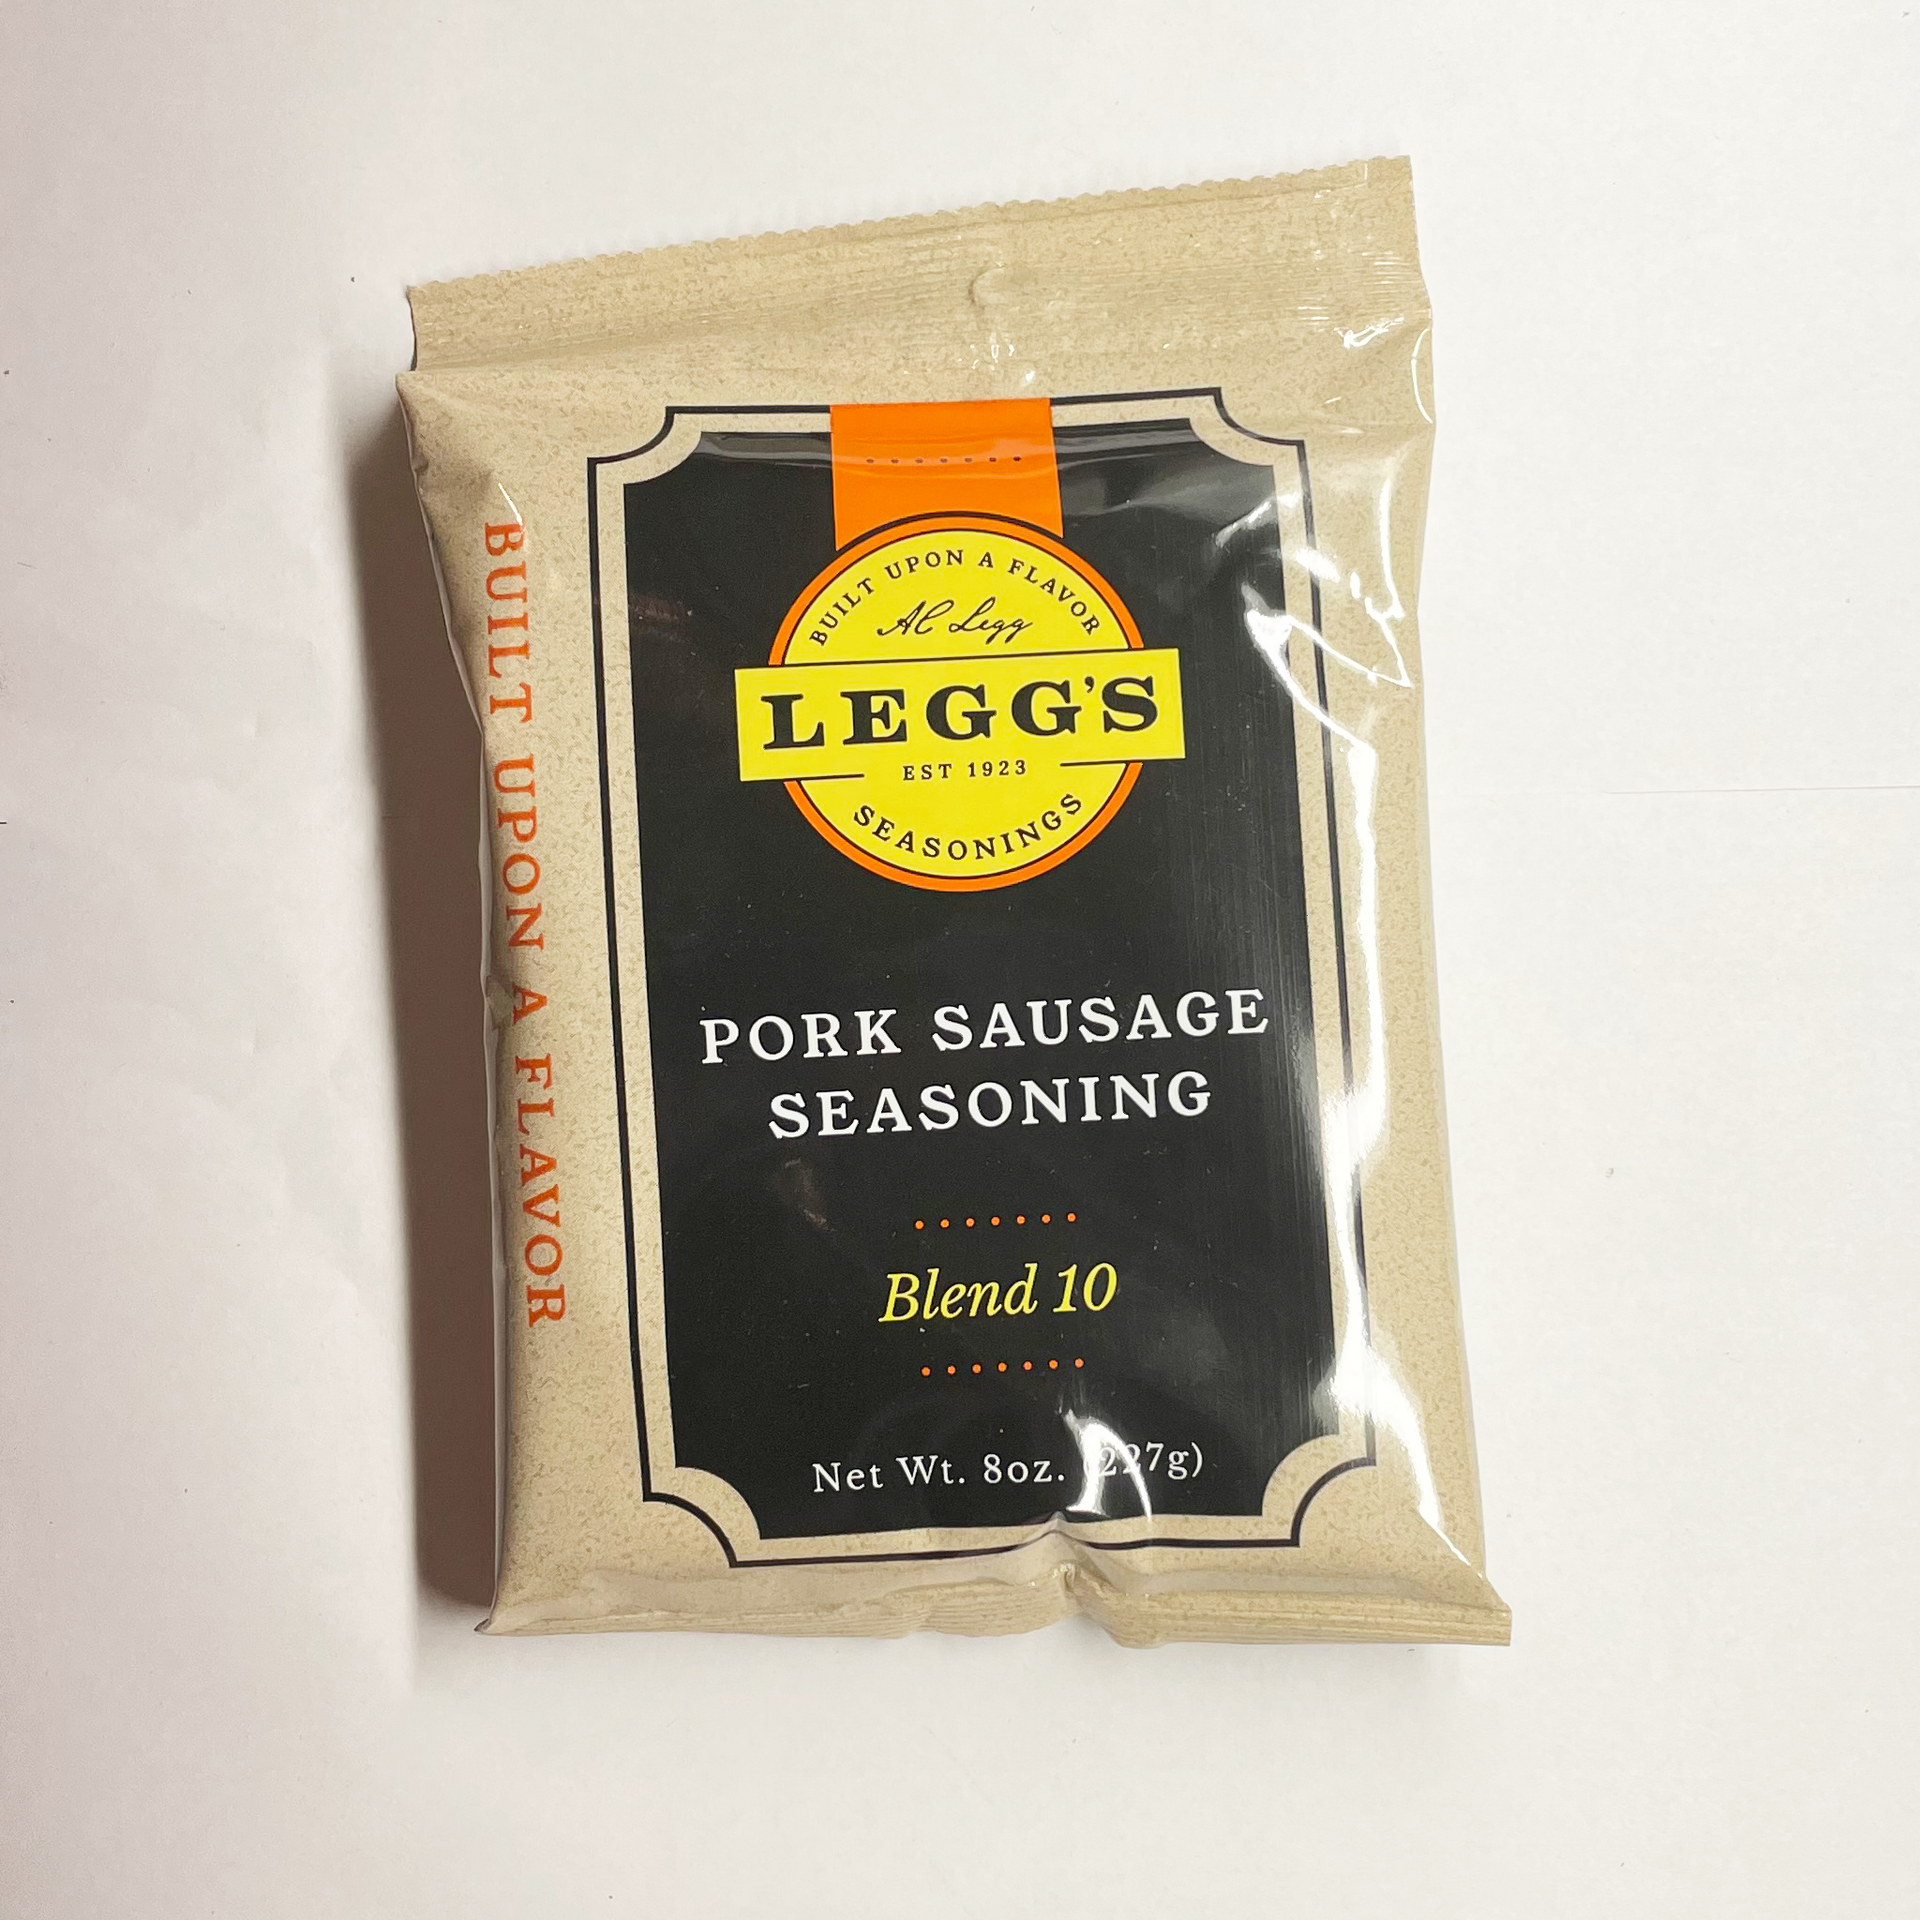 A.C. Legg #10 Pork Sausage Seasoning. Blend #10